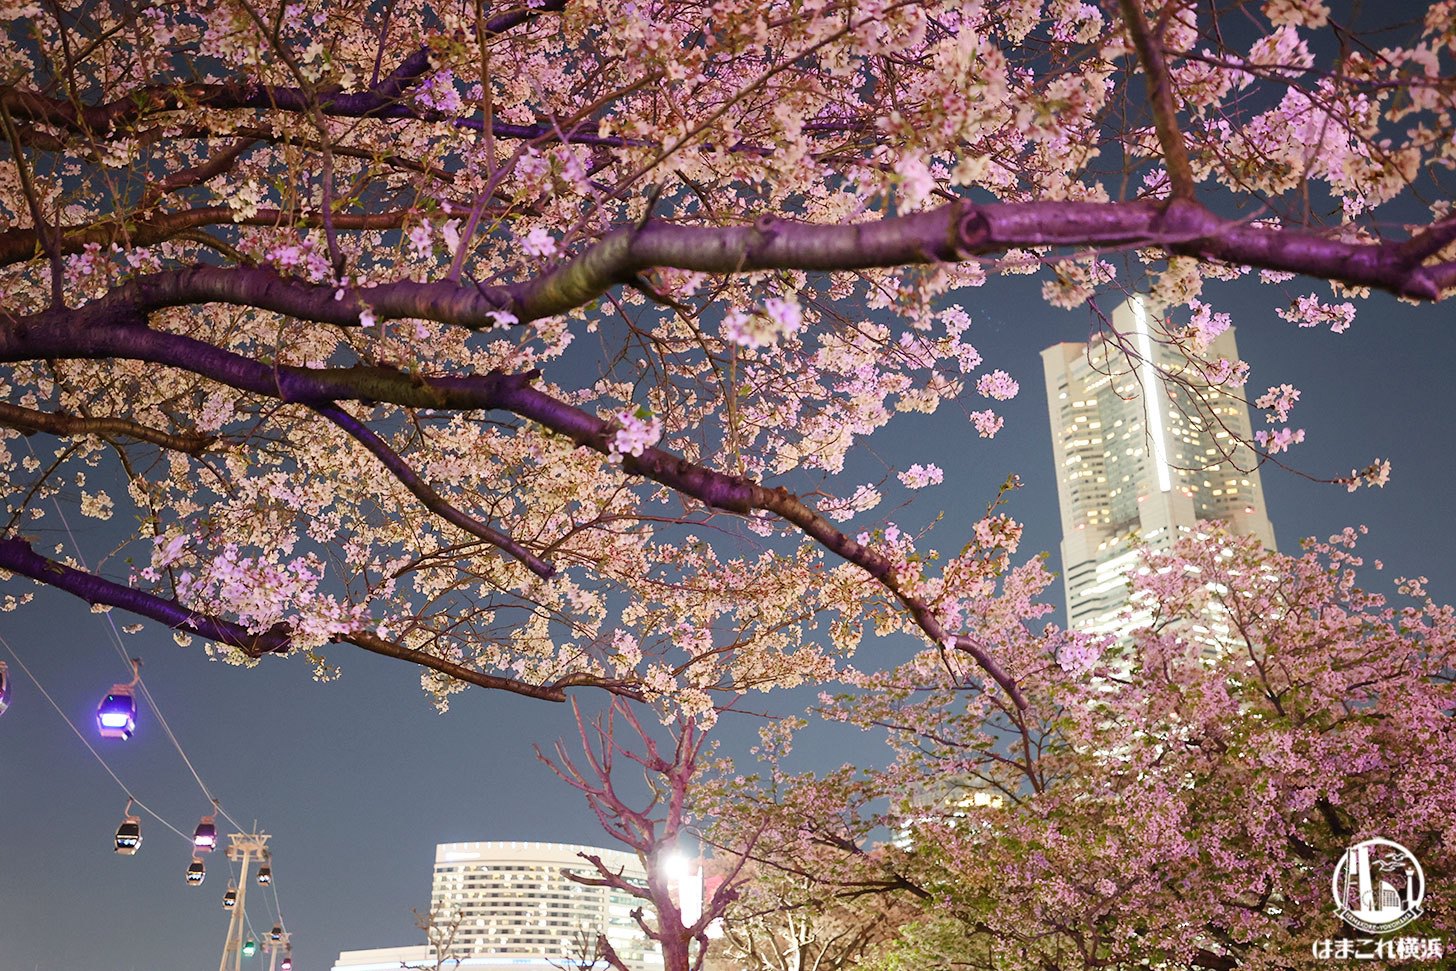 横浜みなとみらいの夜桜スポット初散策！夜景と桜の幻想的コラボに見惚れた